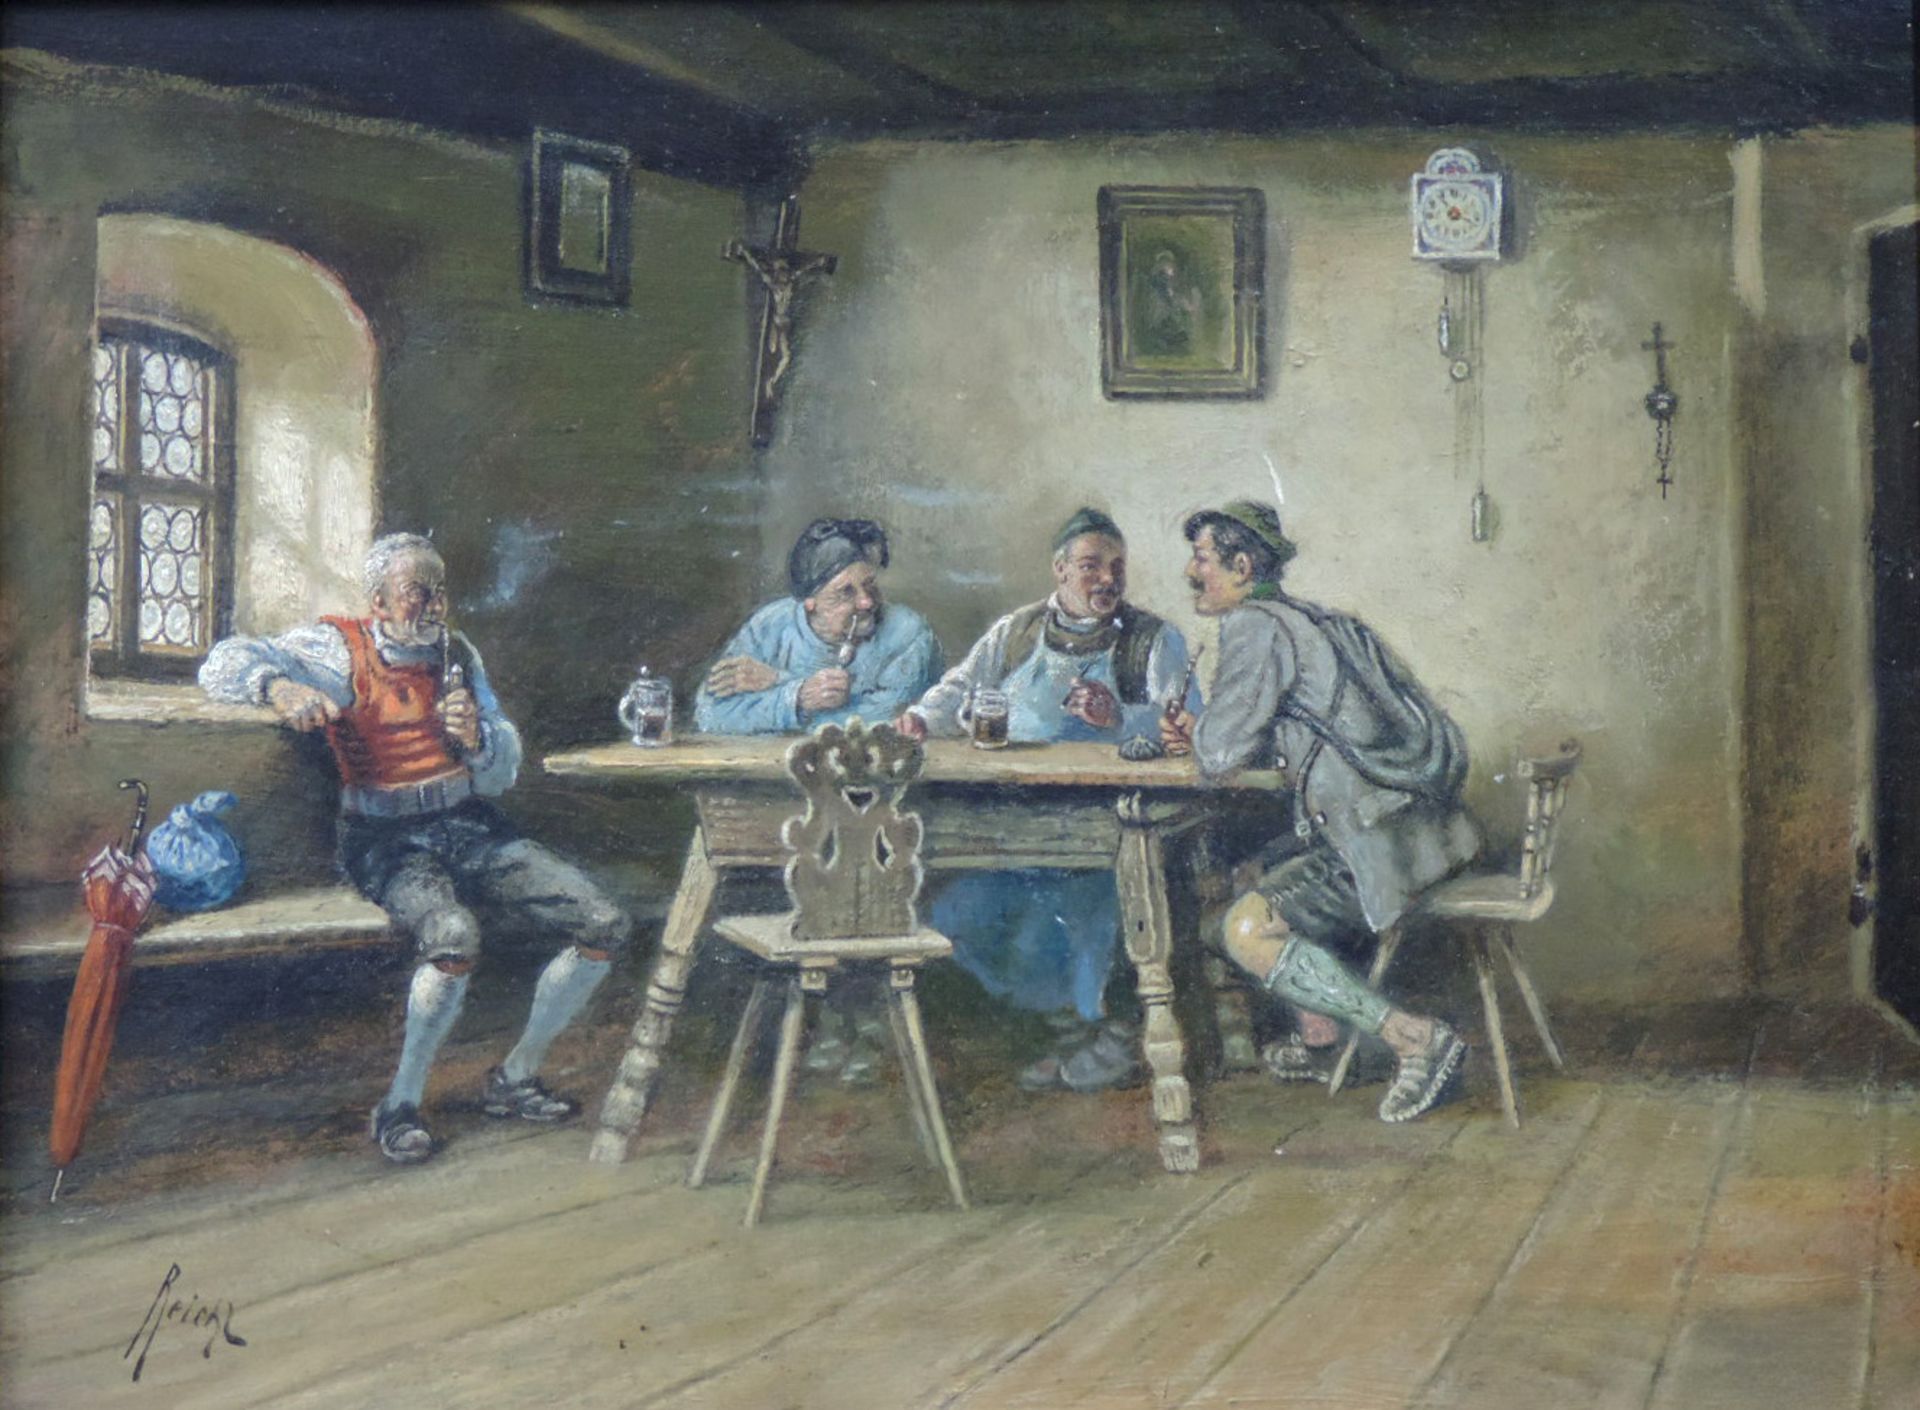 Alois REICHL (1864 - ?). Gasthofszene mit Pfeife rauchenden Männern.40 cm x 30,5 cm. Gemälde, wohl